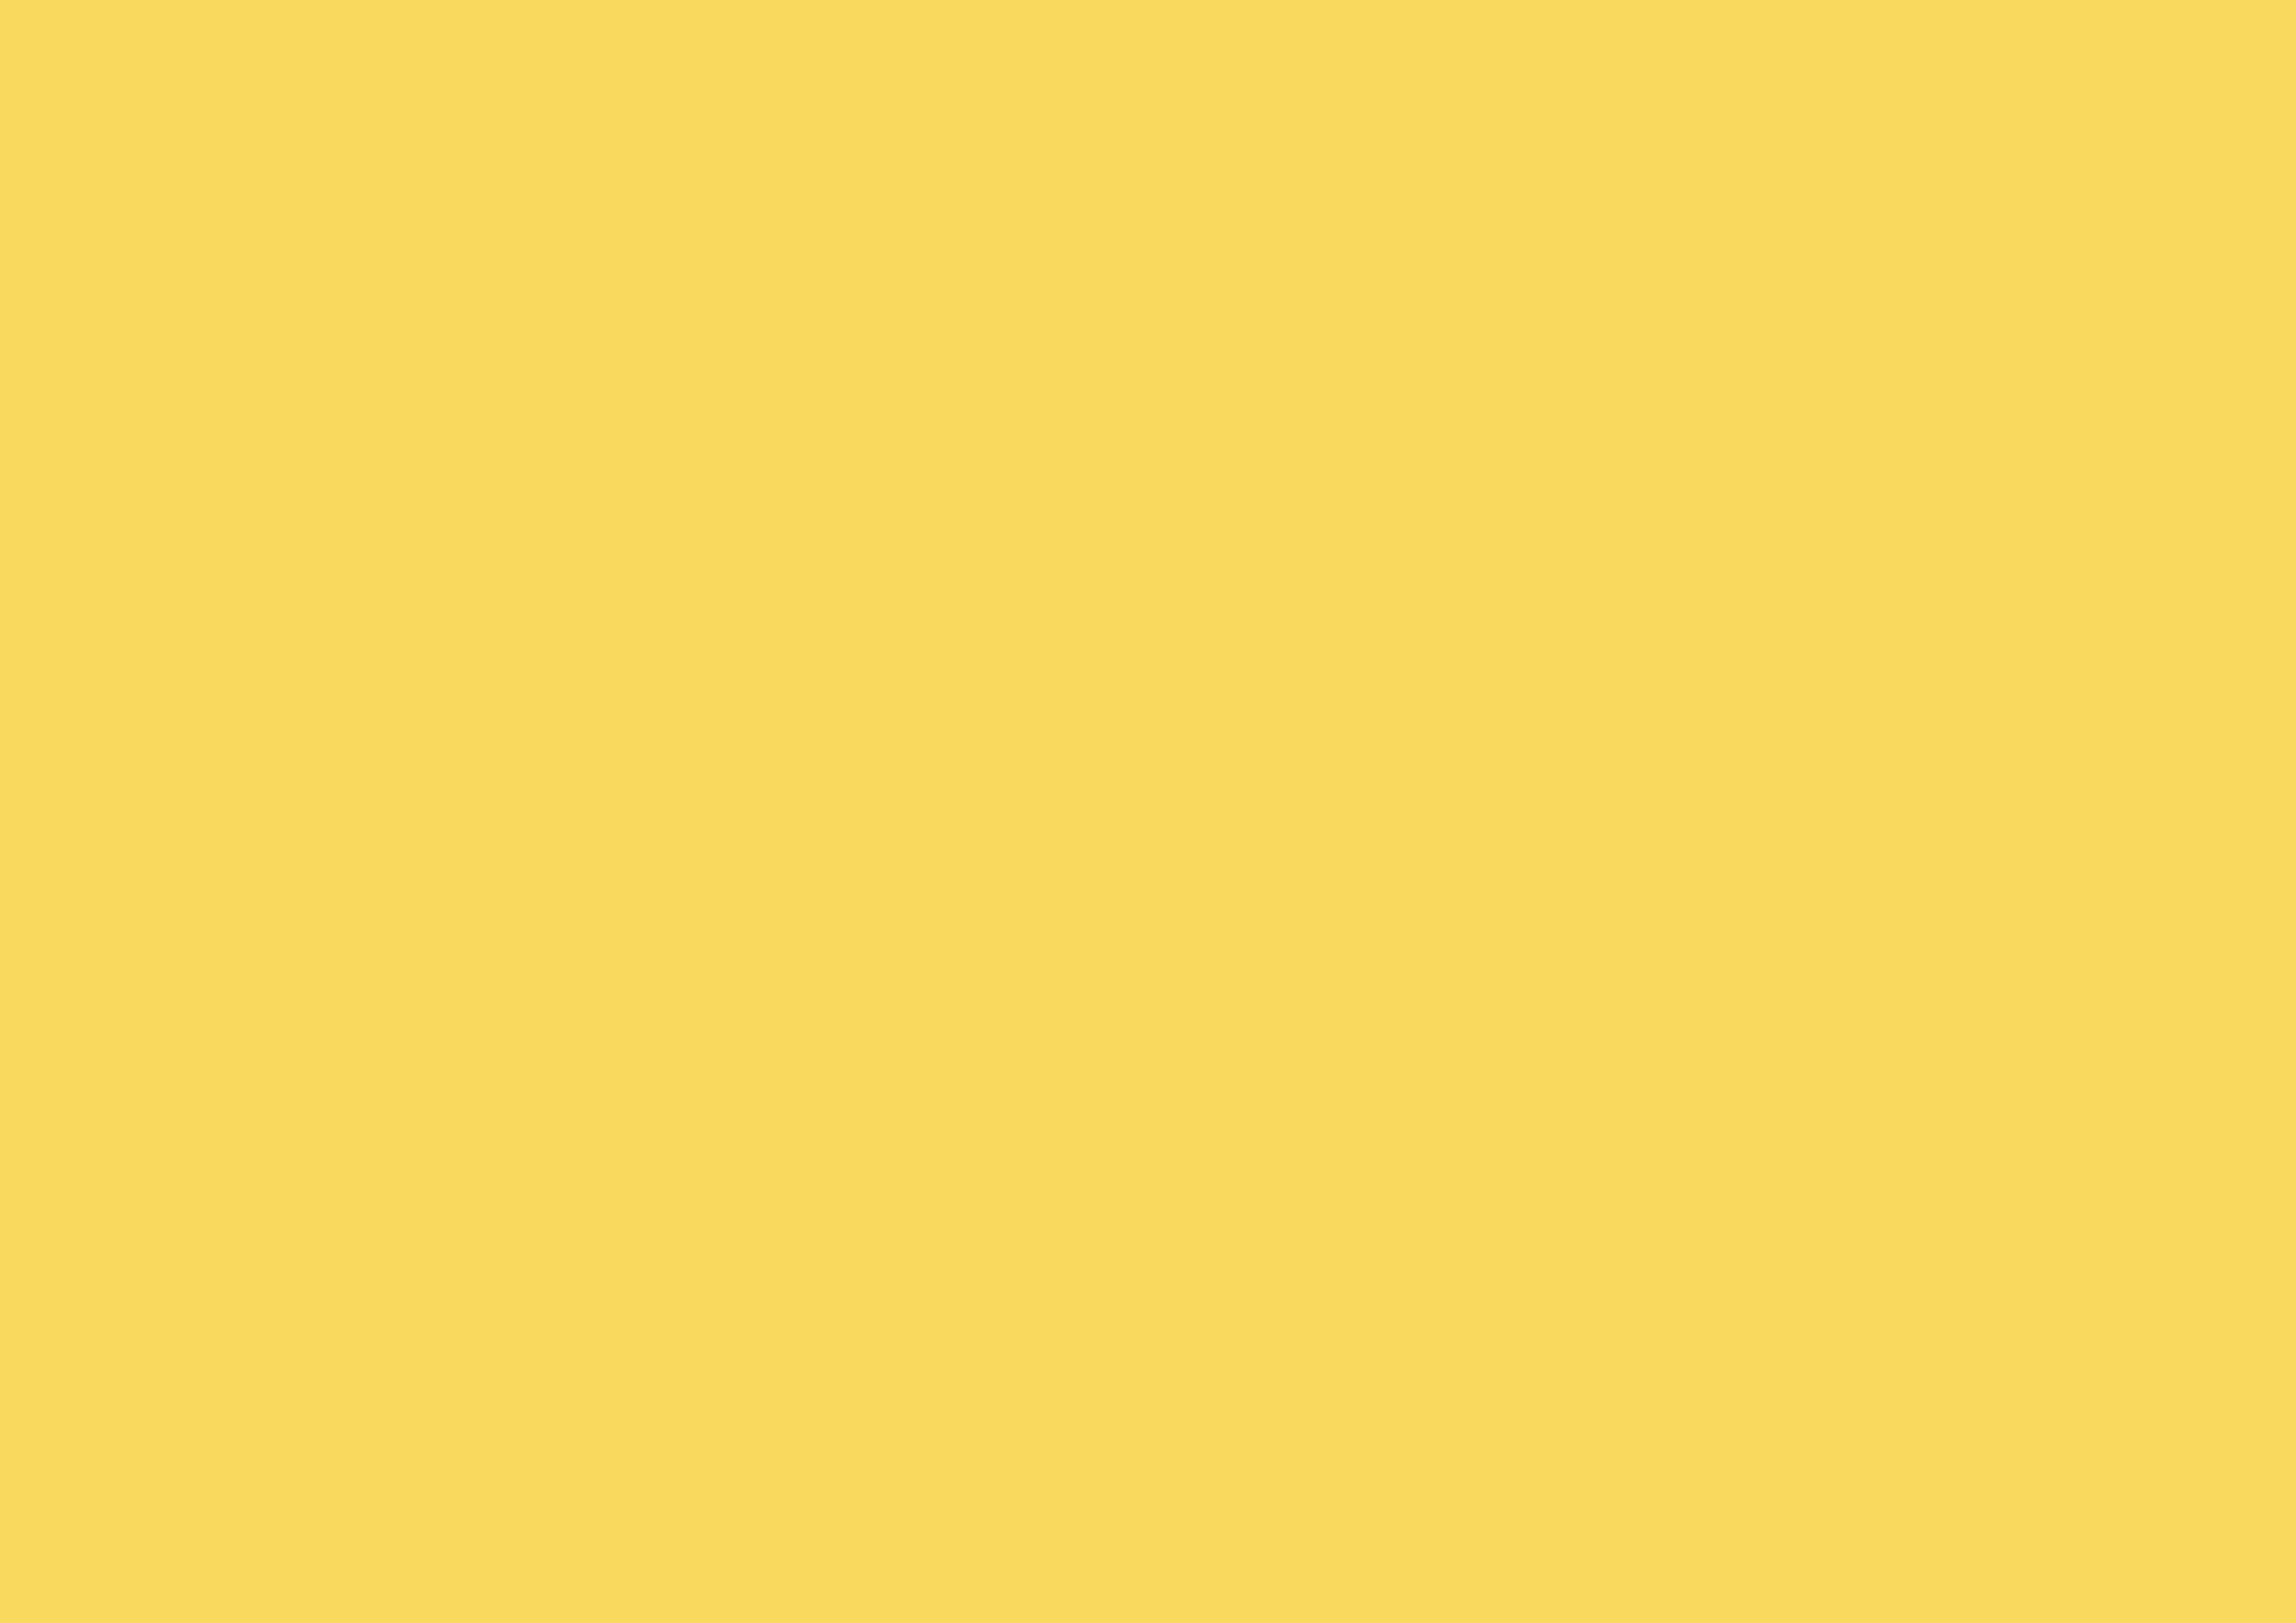 3508x2480 Stil De Grain Yellow Solid Color Background